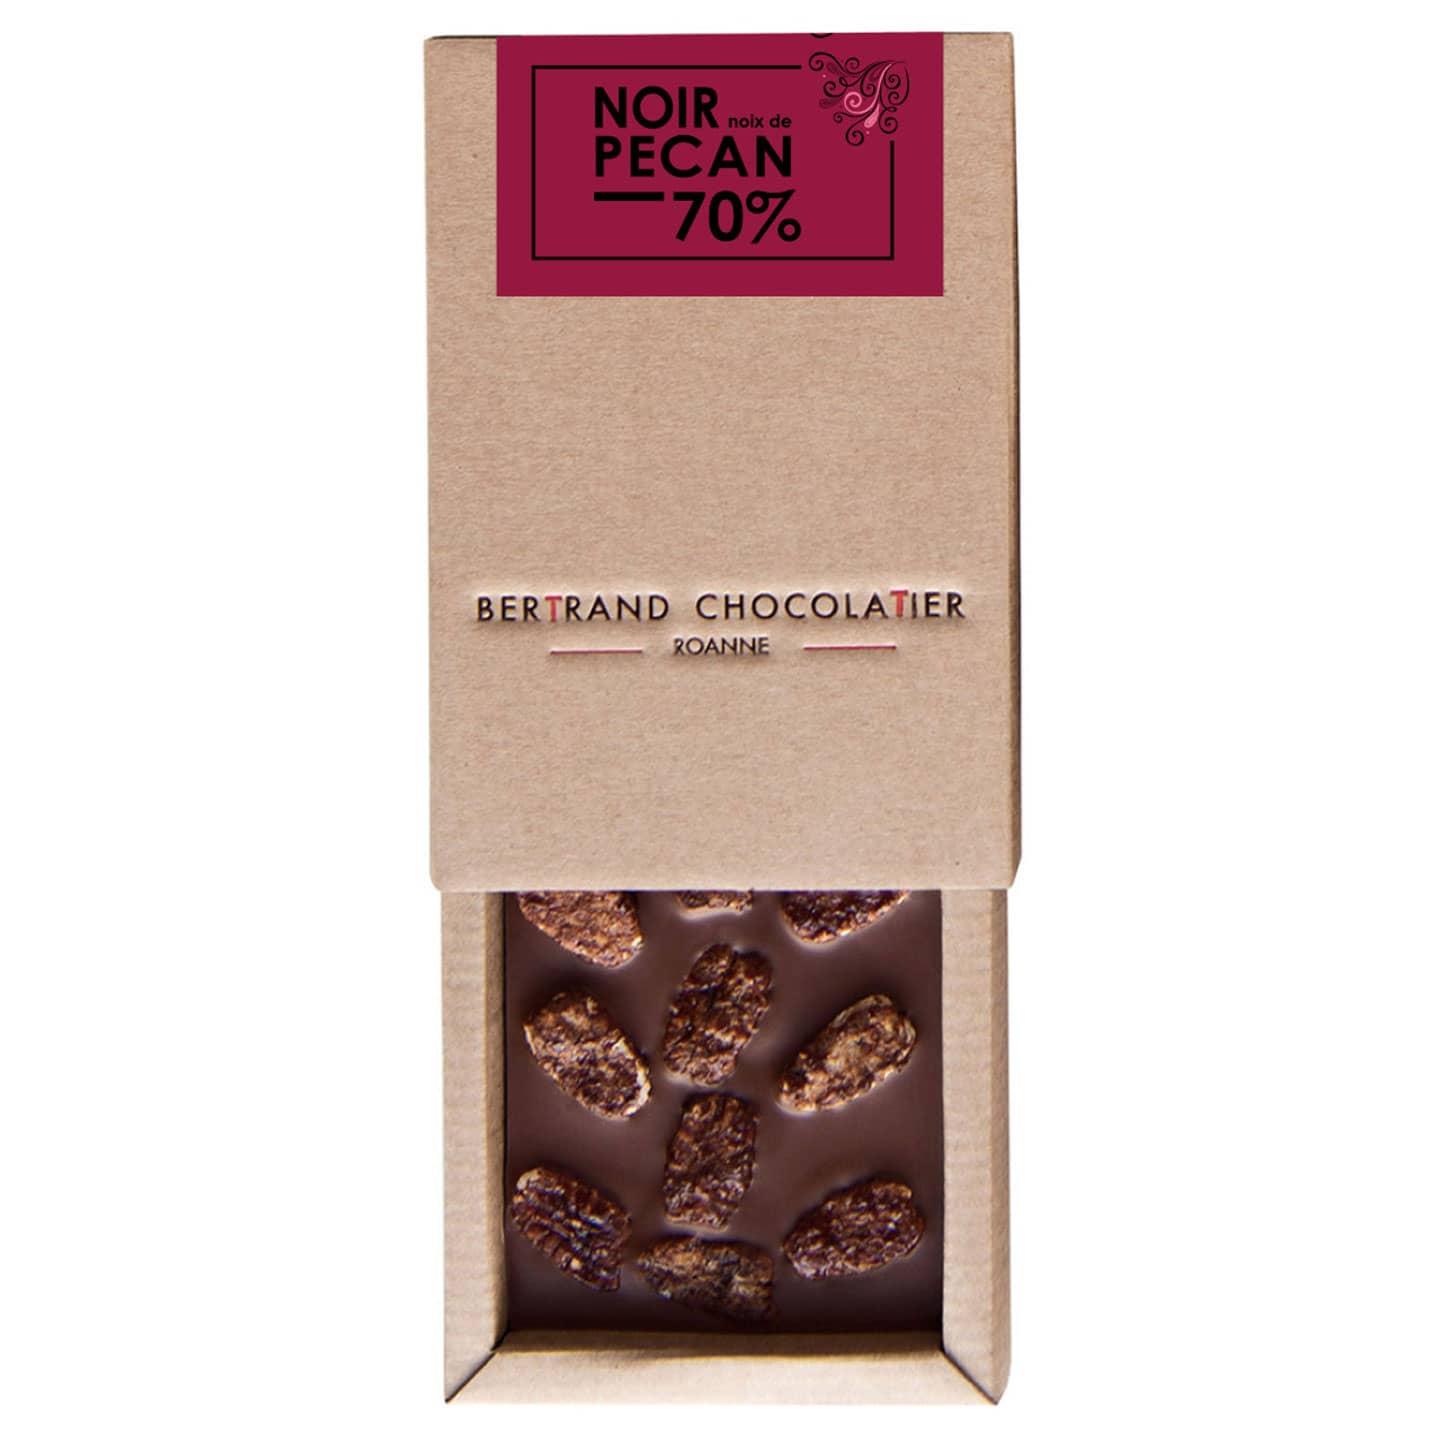 Tablette Chocolat Noir Pécan 70% 100g